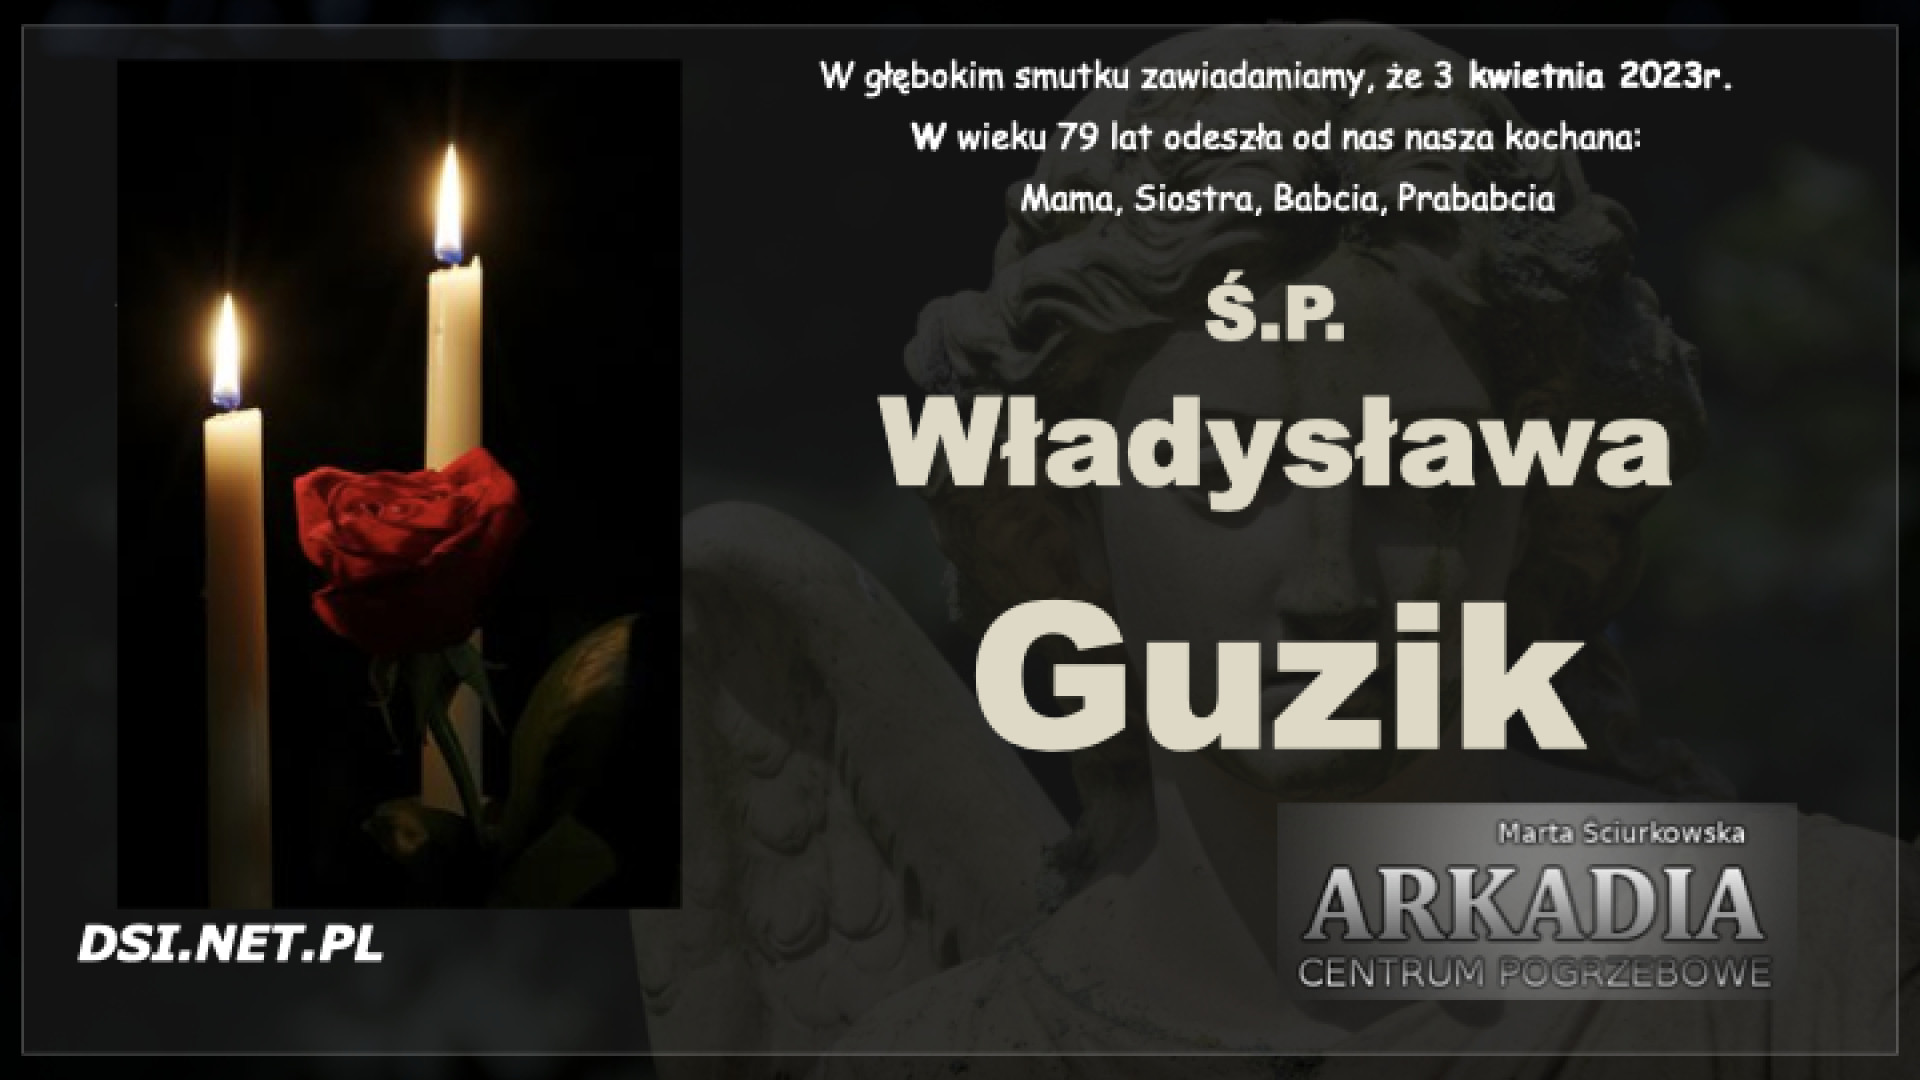 Ś.P Władysława Guzik